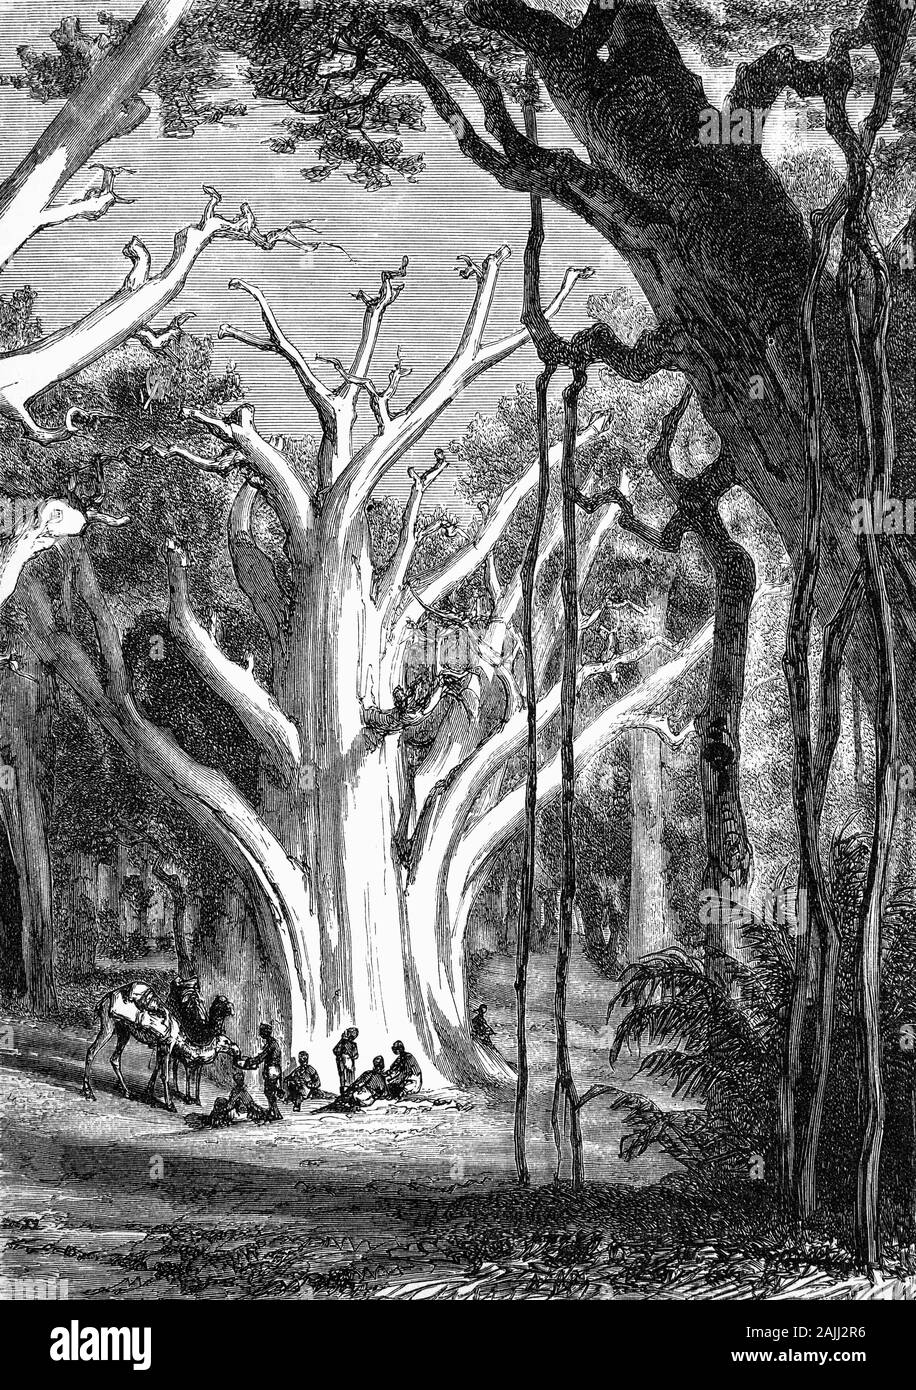 Plantes : Un Baobob géant (Adansonia digitata) est la plus répandue des espèces d'arbres du genre Adansonia, les baobabs, et est originaire de l'Afrique. Ils sont généralement trouvés dans les savanes sèches et chaudes de l'Afrique subsaharienne, où ils dominent le paysage et peut révéler la présence d'un cours d'eau. Ils ont toujours été considérées comme des sources de nourriture, d'eau, les remèdes de santé ou des lieux de refuge et sont de légendes et de superstitions. Banque D'Images